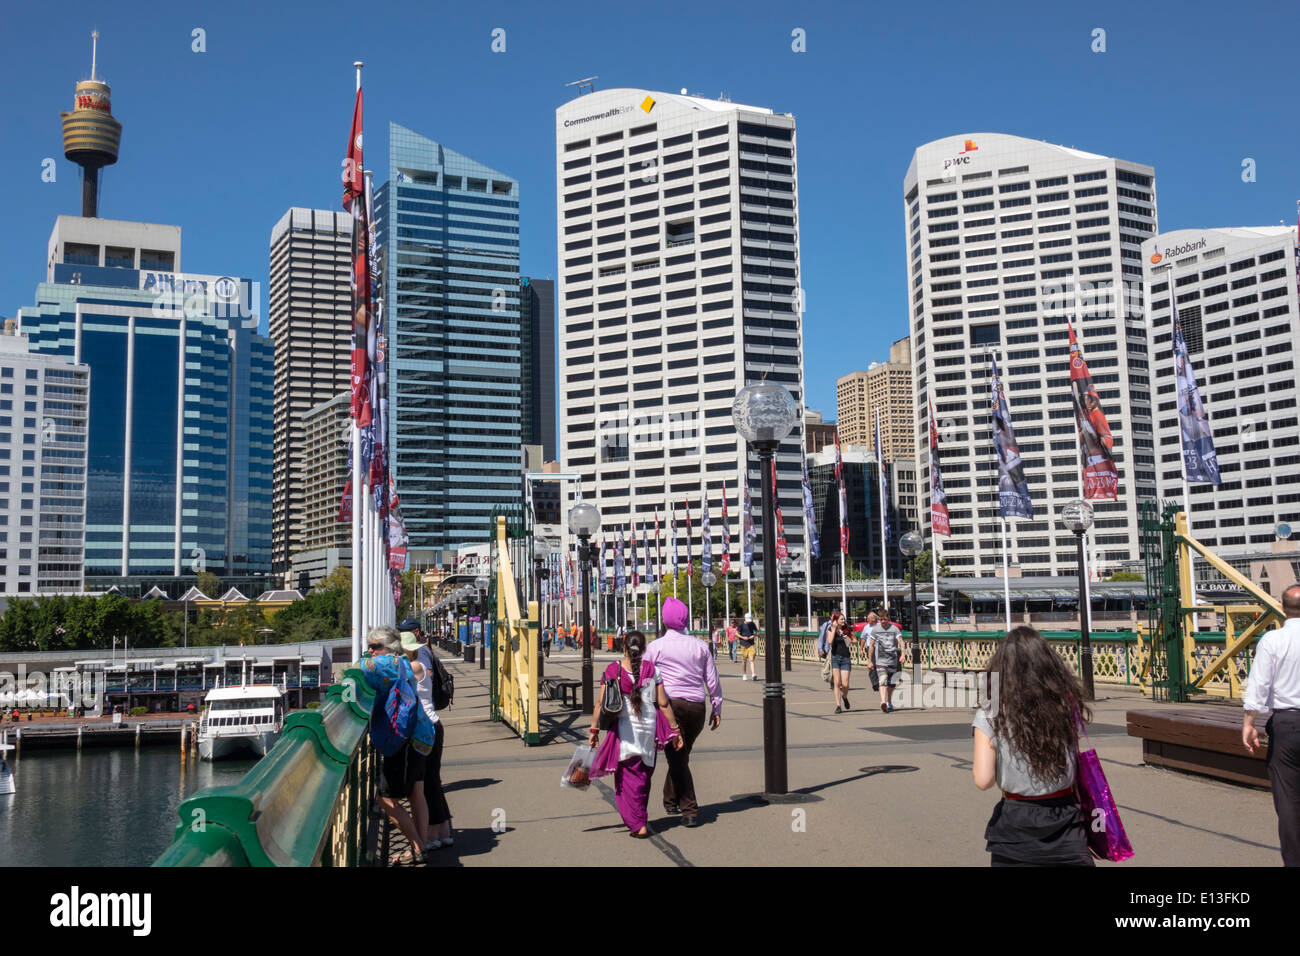 Sydney Australie, Darling Harbour, port, Pyrmont Bridge, marche, Cockle Bay, gratte-ciel, horizon de la ville, Sydney Tower, AU140311039 Banque D'Images